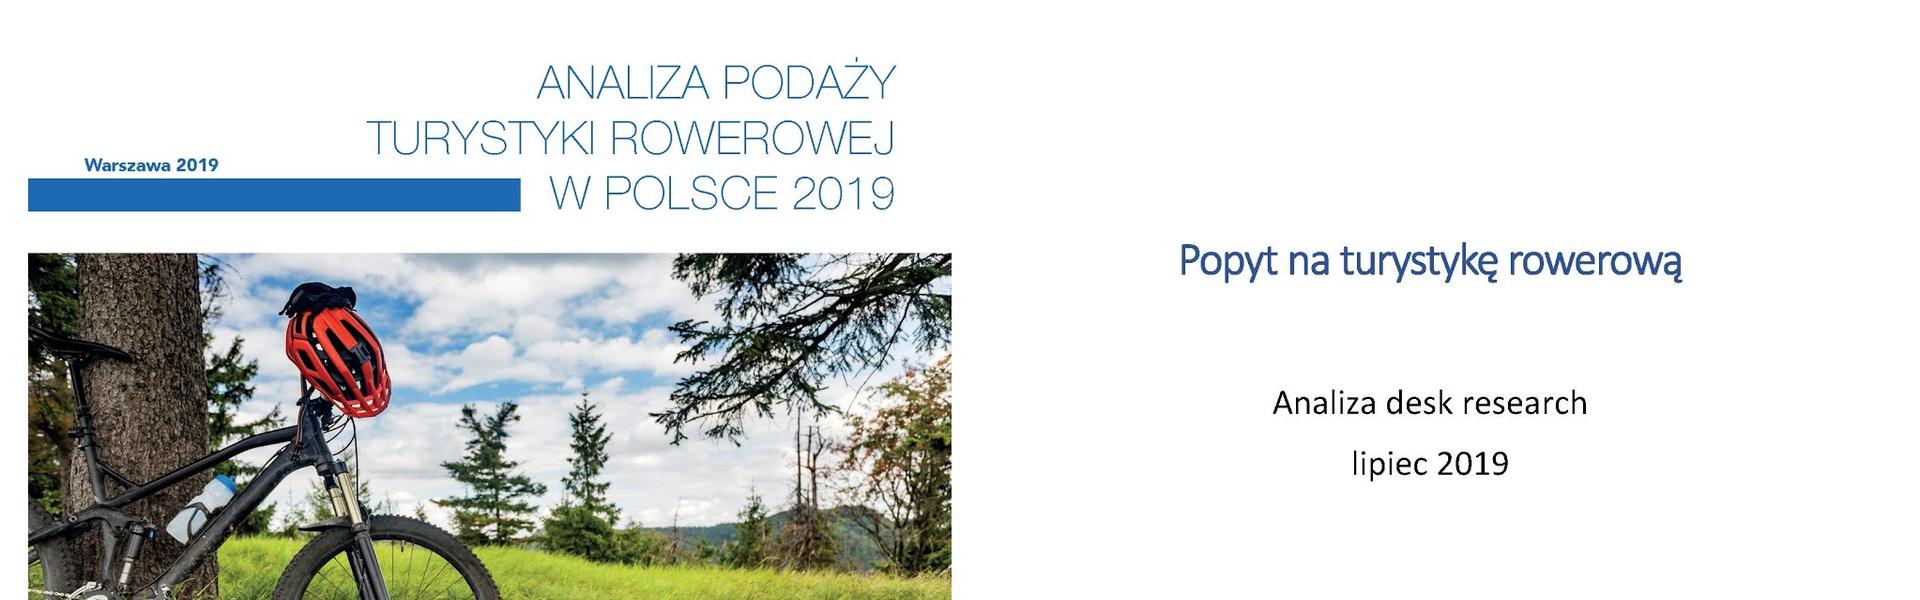 Analiza popytu i podaży na turystykę rowerową w Polsce i Małopolsce (POT 2019)